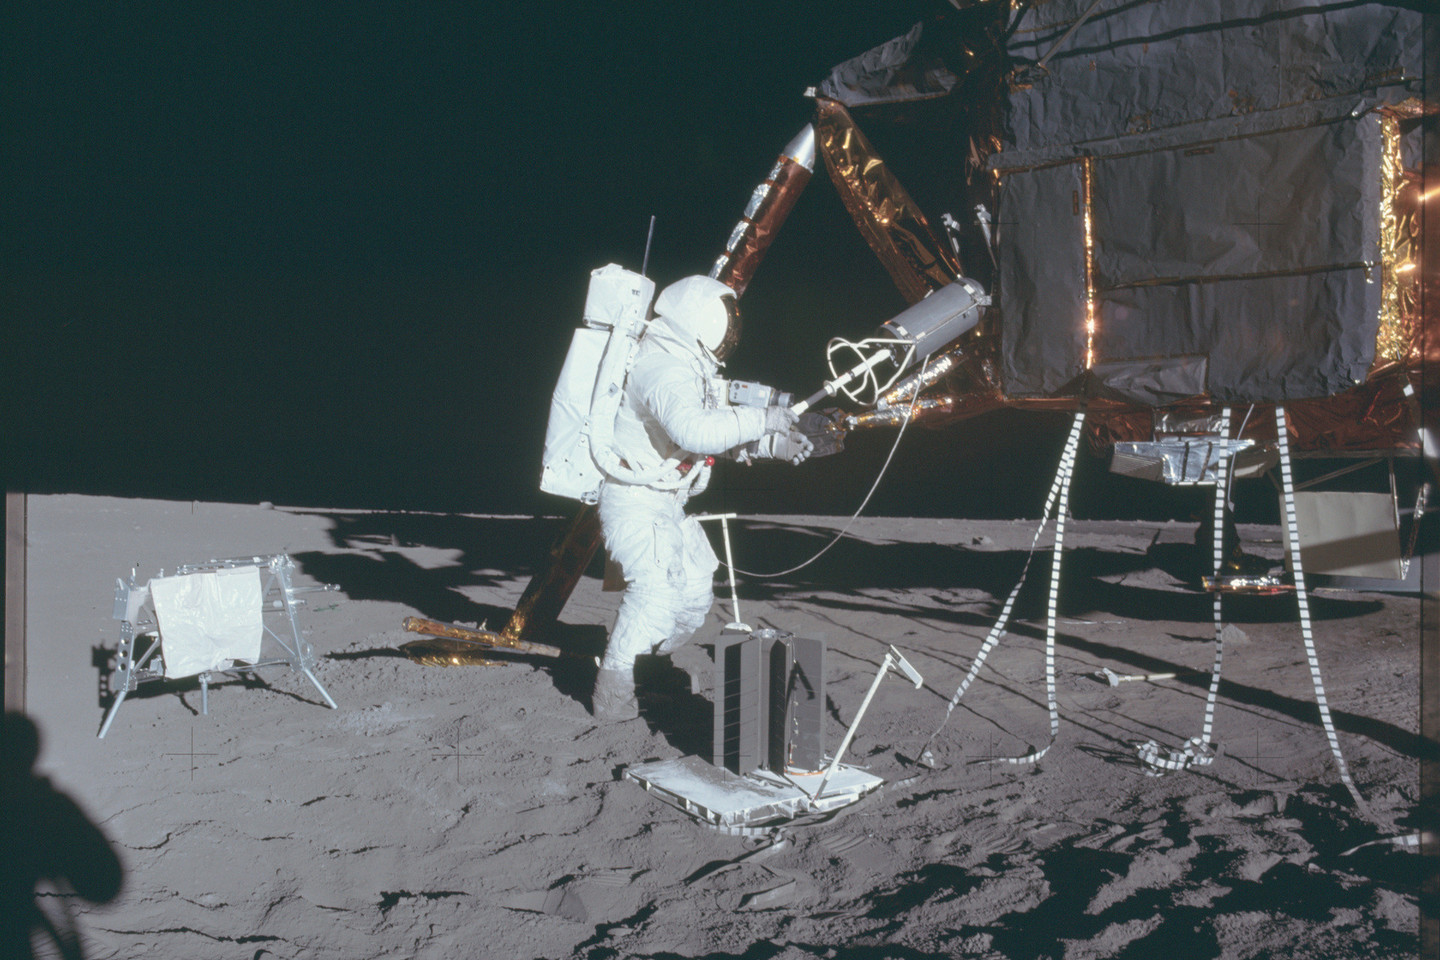 „Apollo“ nuotraukų archyve apstu įvairiausių kadrų: nuo Mėnulio paviršiaus iki astronautų darbo akimirkų.<br>NASA nuotr.